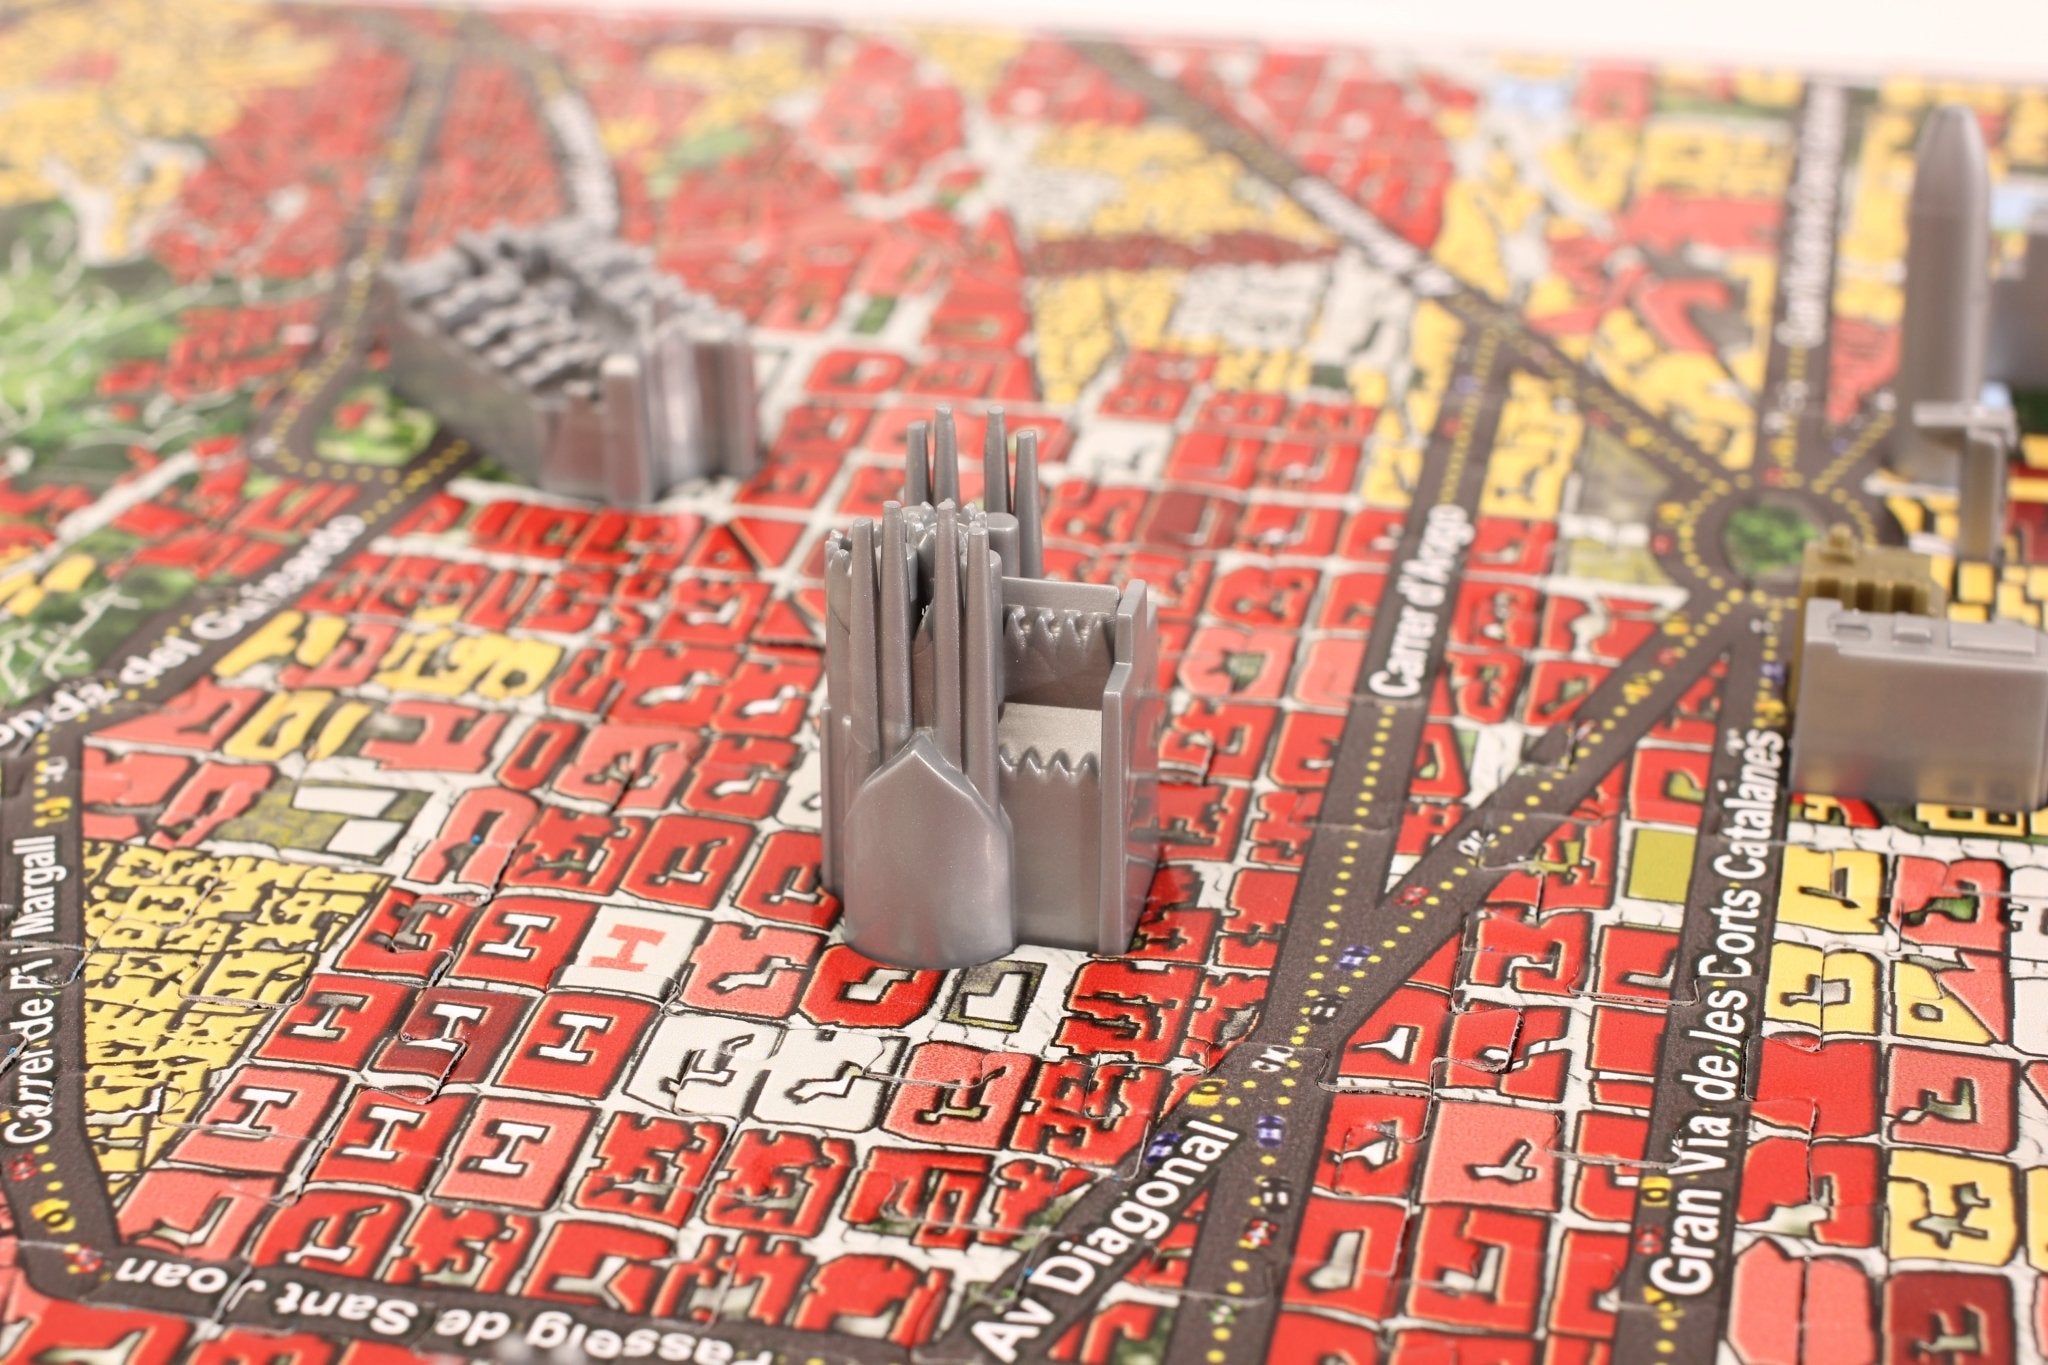 4D Cityscape Barcelona Time Puzzle - 4DPuzz - 4DPuzz
